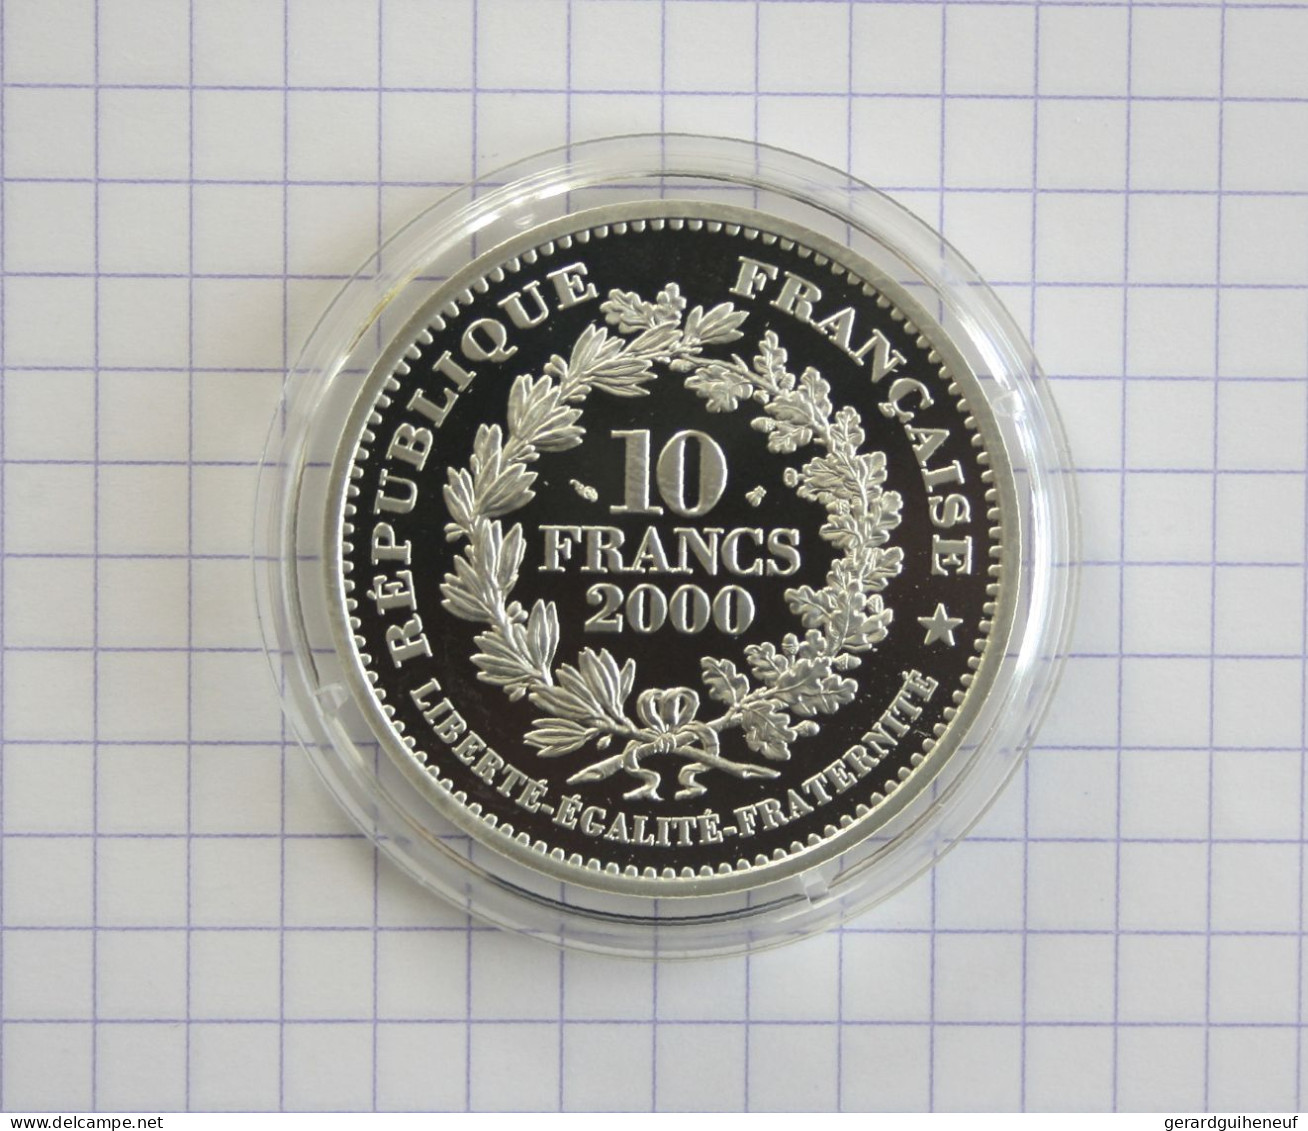 RARISSIME : 10 Francs ARGENT 2000 FDC "Louis XIII" - Cotation : 80 € : - Lots & Kiloware - Coins